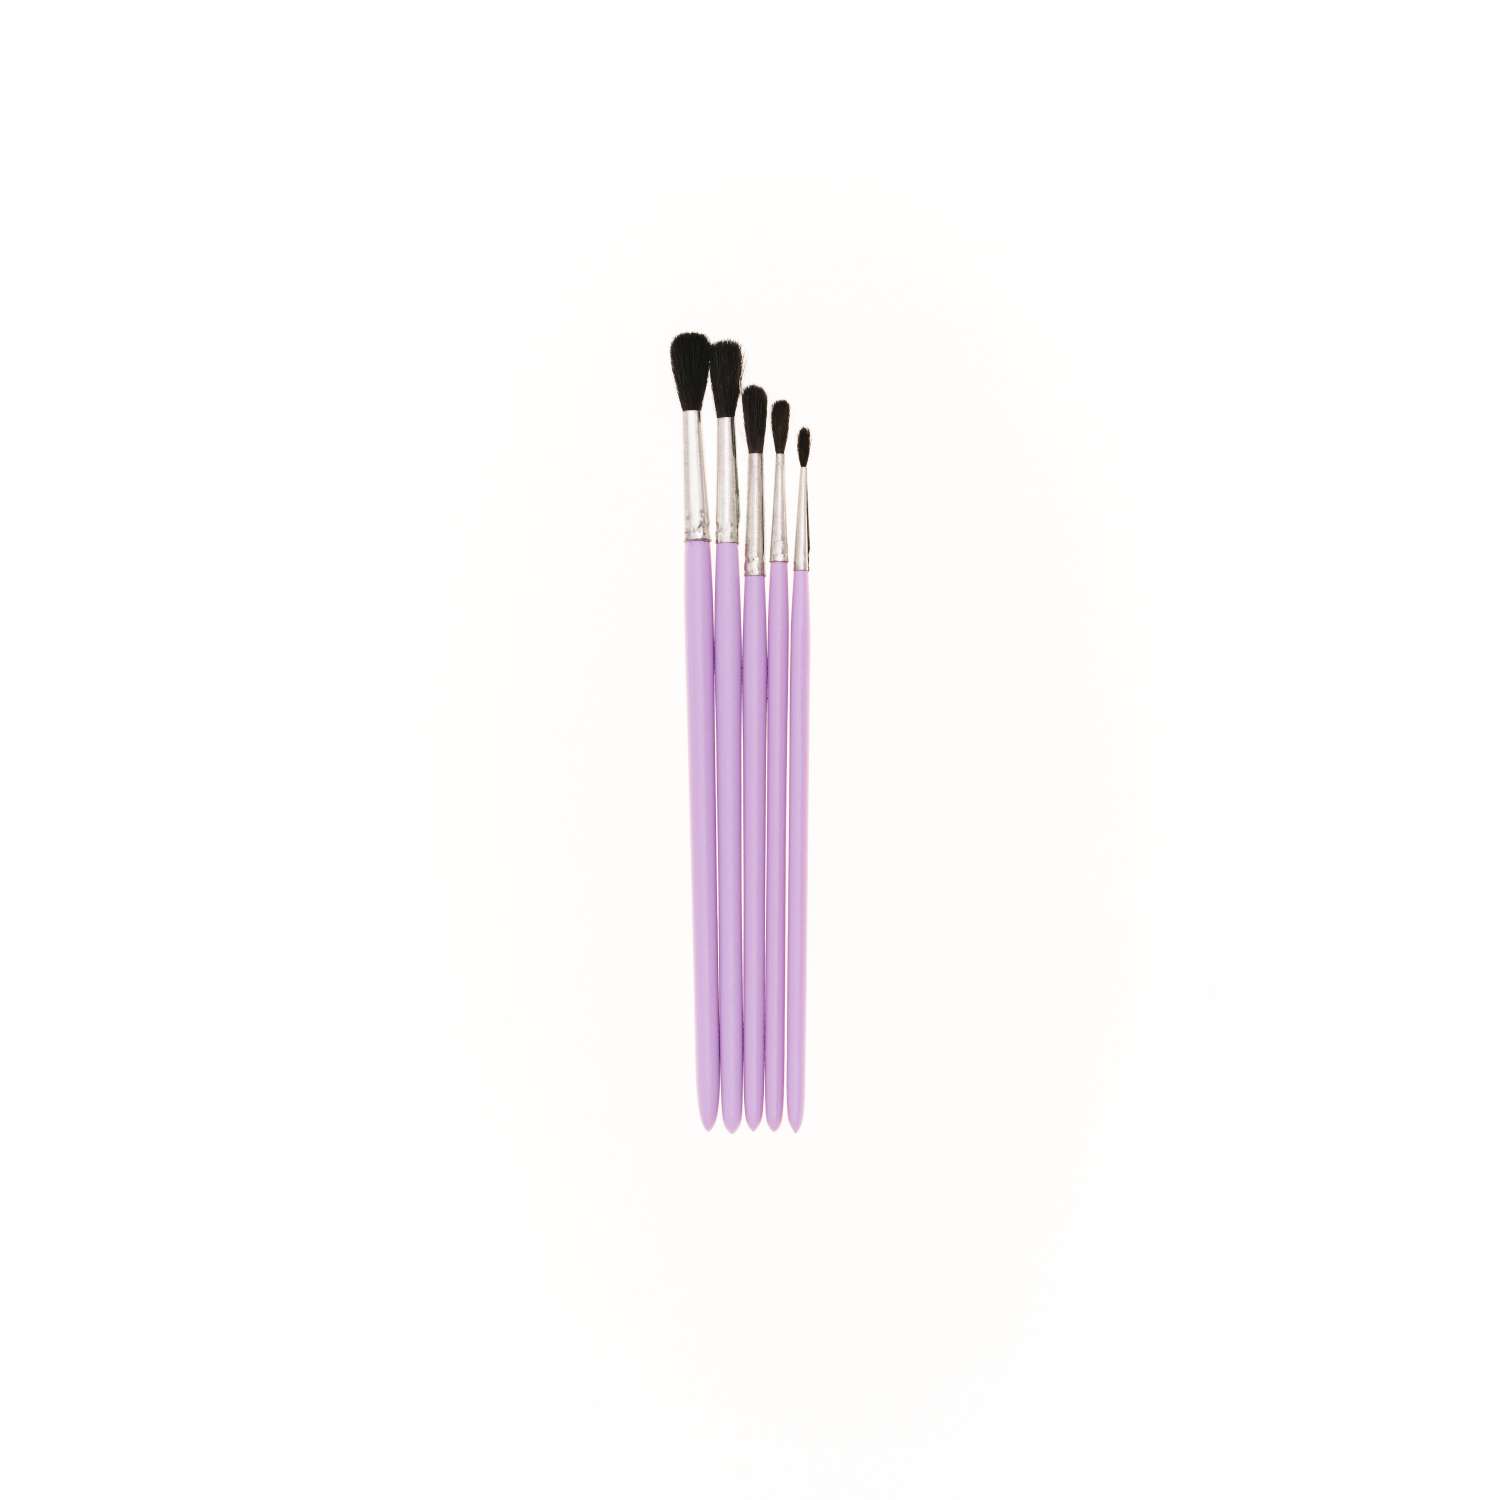 Кисти для рисования набор SwanAm Фруктики белка круглая № 1 2 3 4 5 цветная ручка - фото 1